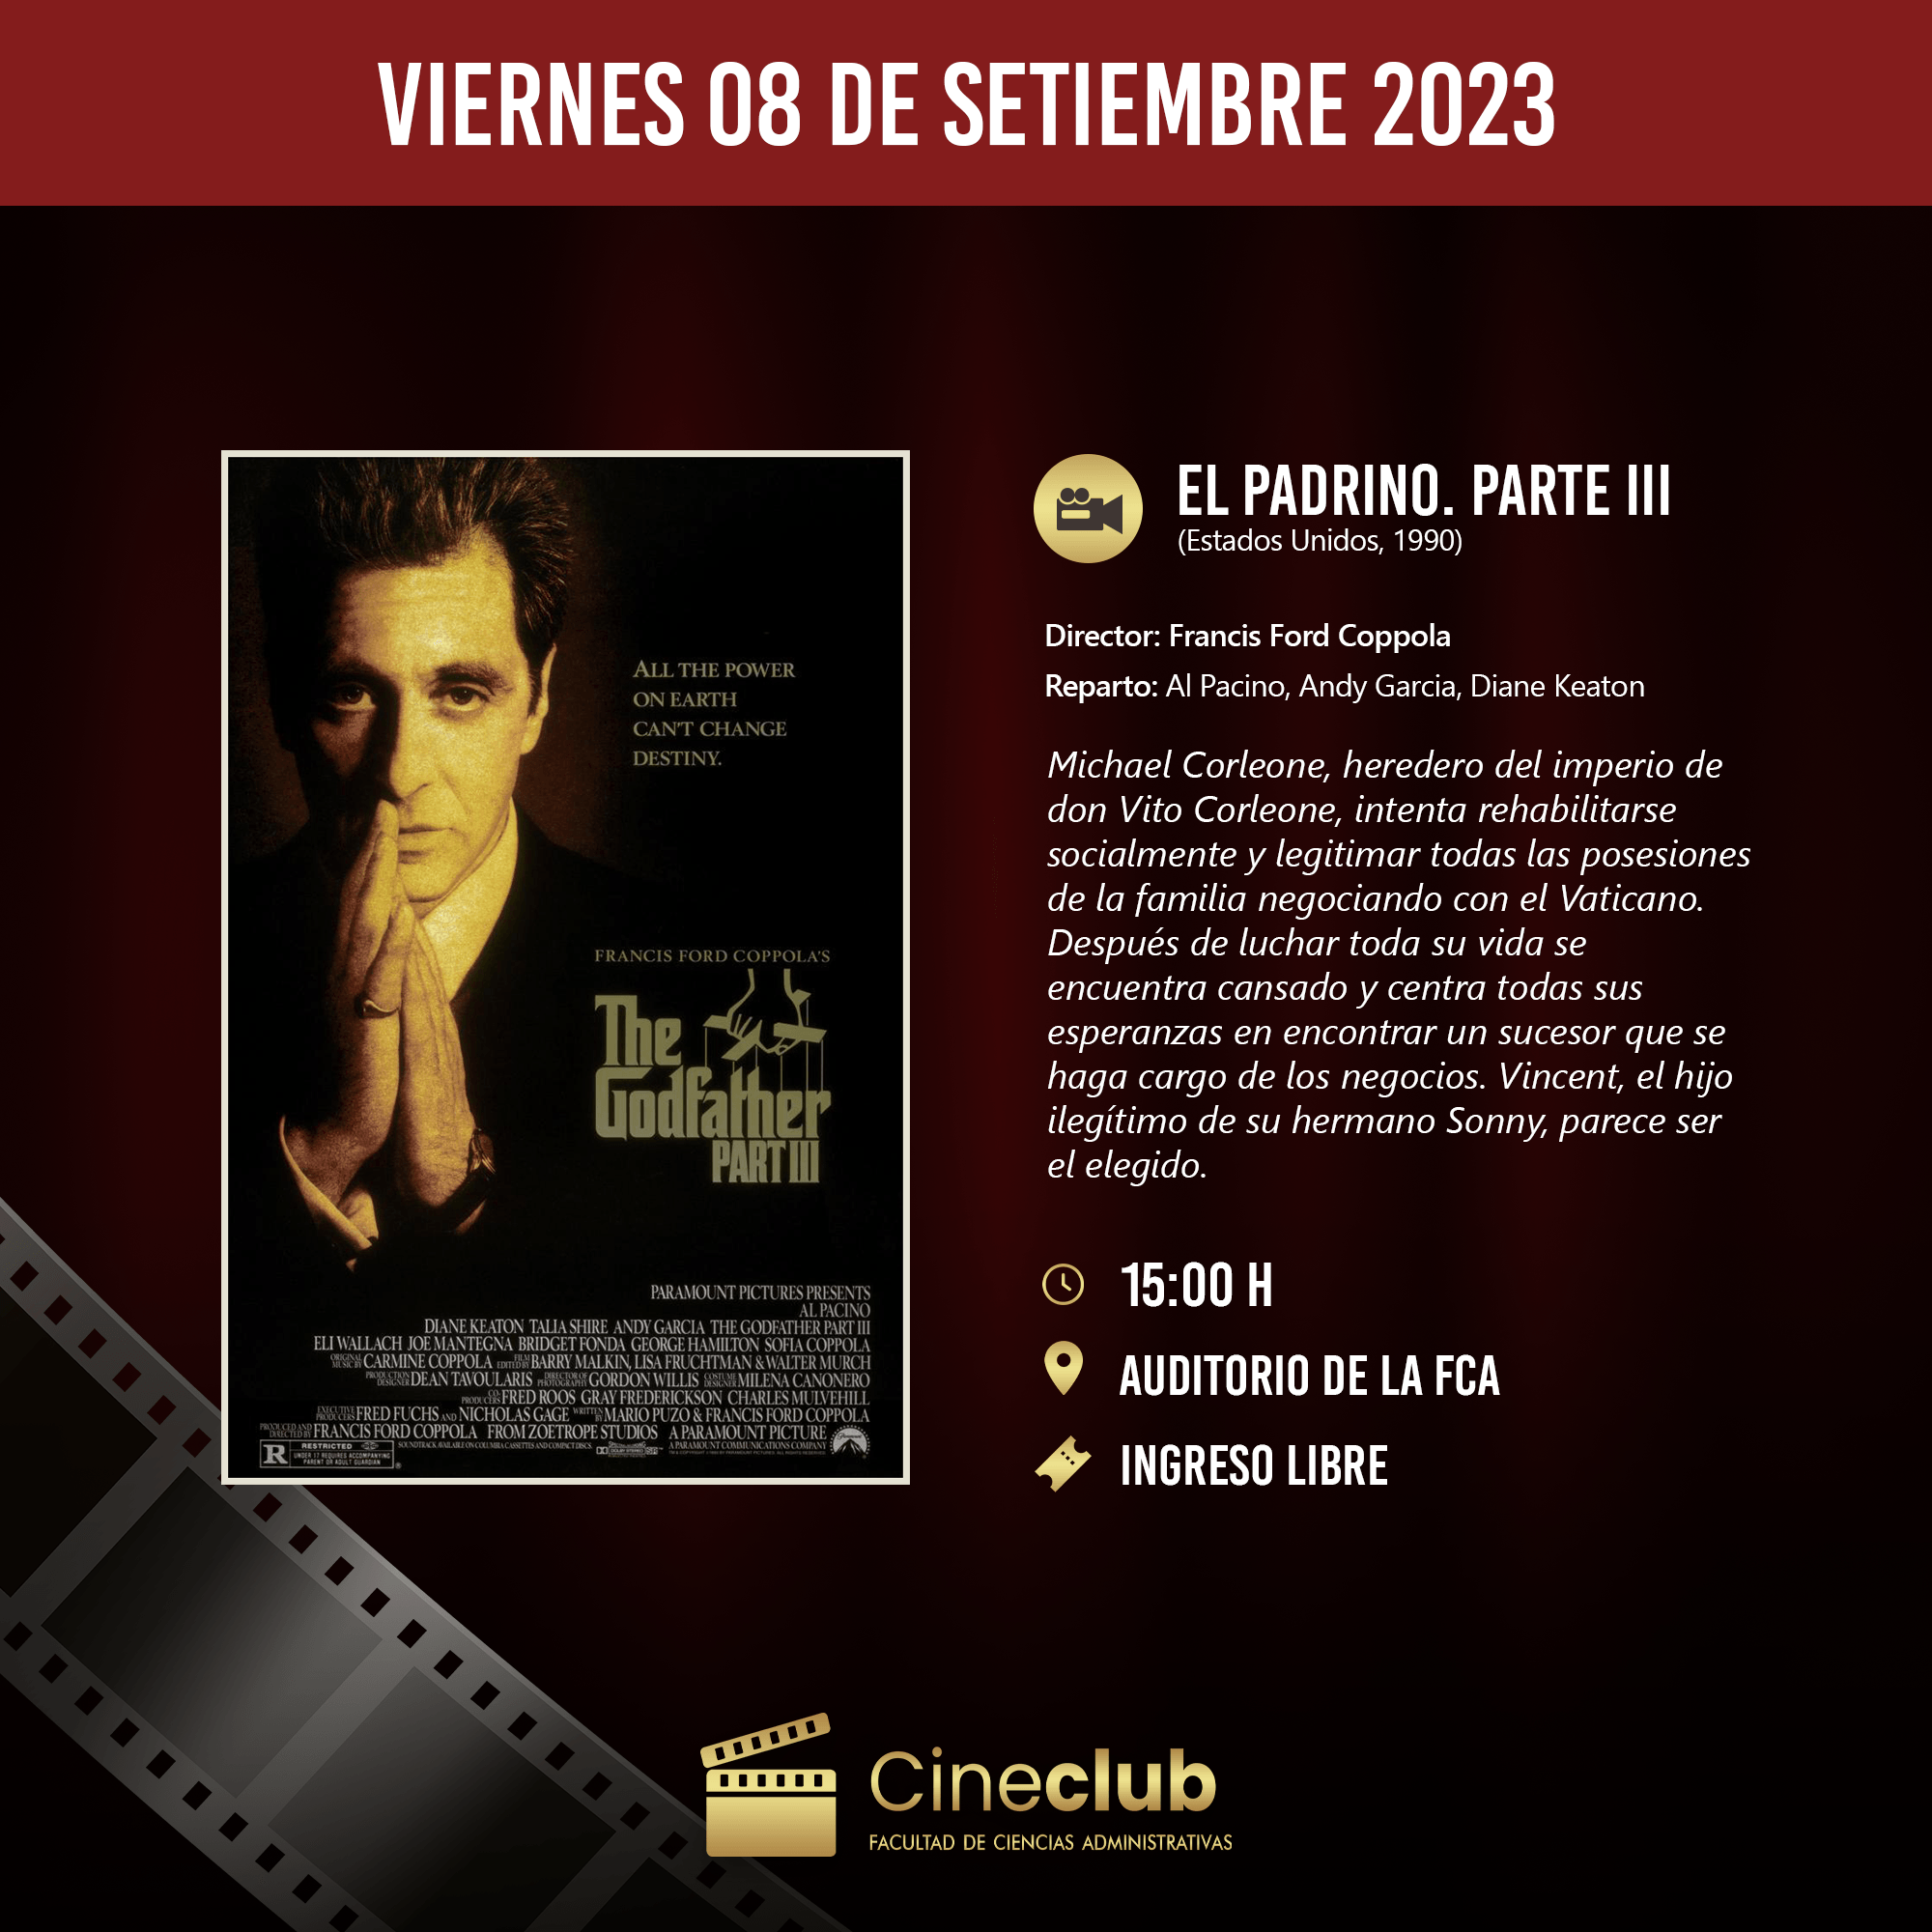 Cineclub FCA: Este viernes presenta la tercera película de El Padrino